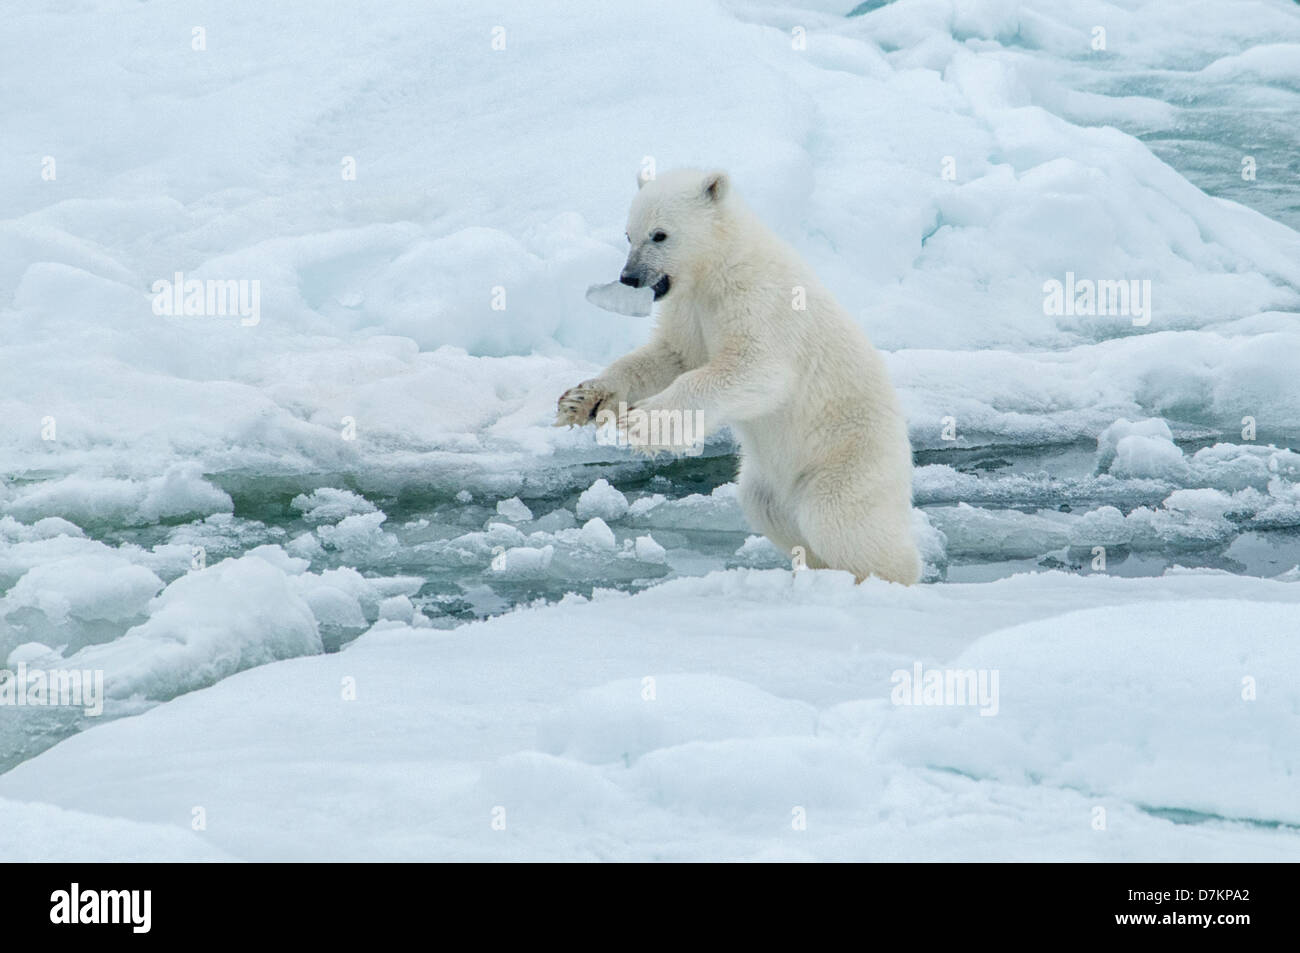 Ourson polaire mignon, Ursus maritimus, jouant avec de la glace dans sa bouche sur le Olgastretet la banquise, archipel du Svalbard, Norvège Banque D'Images